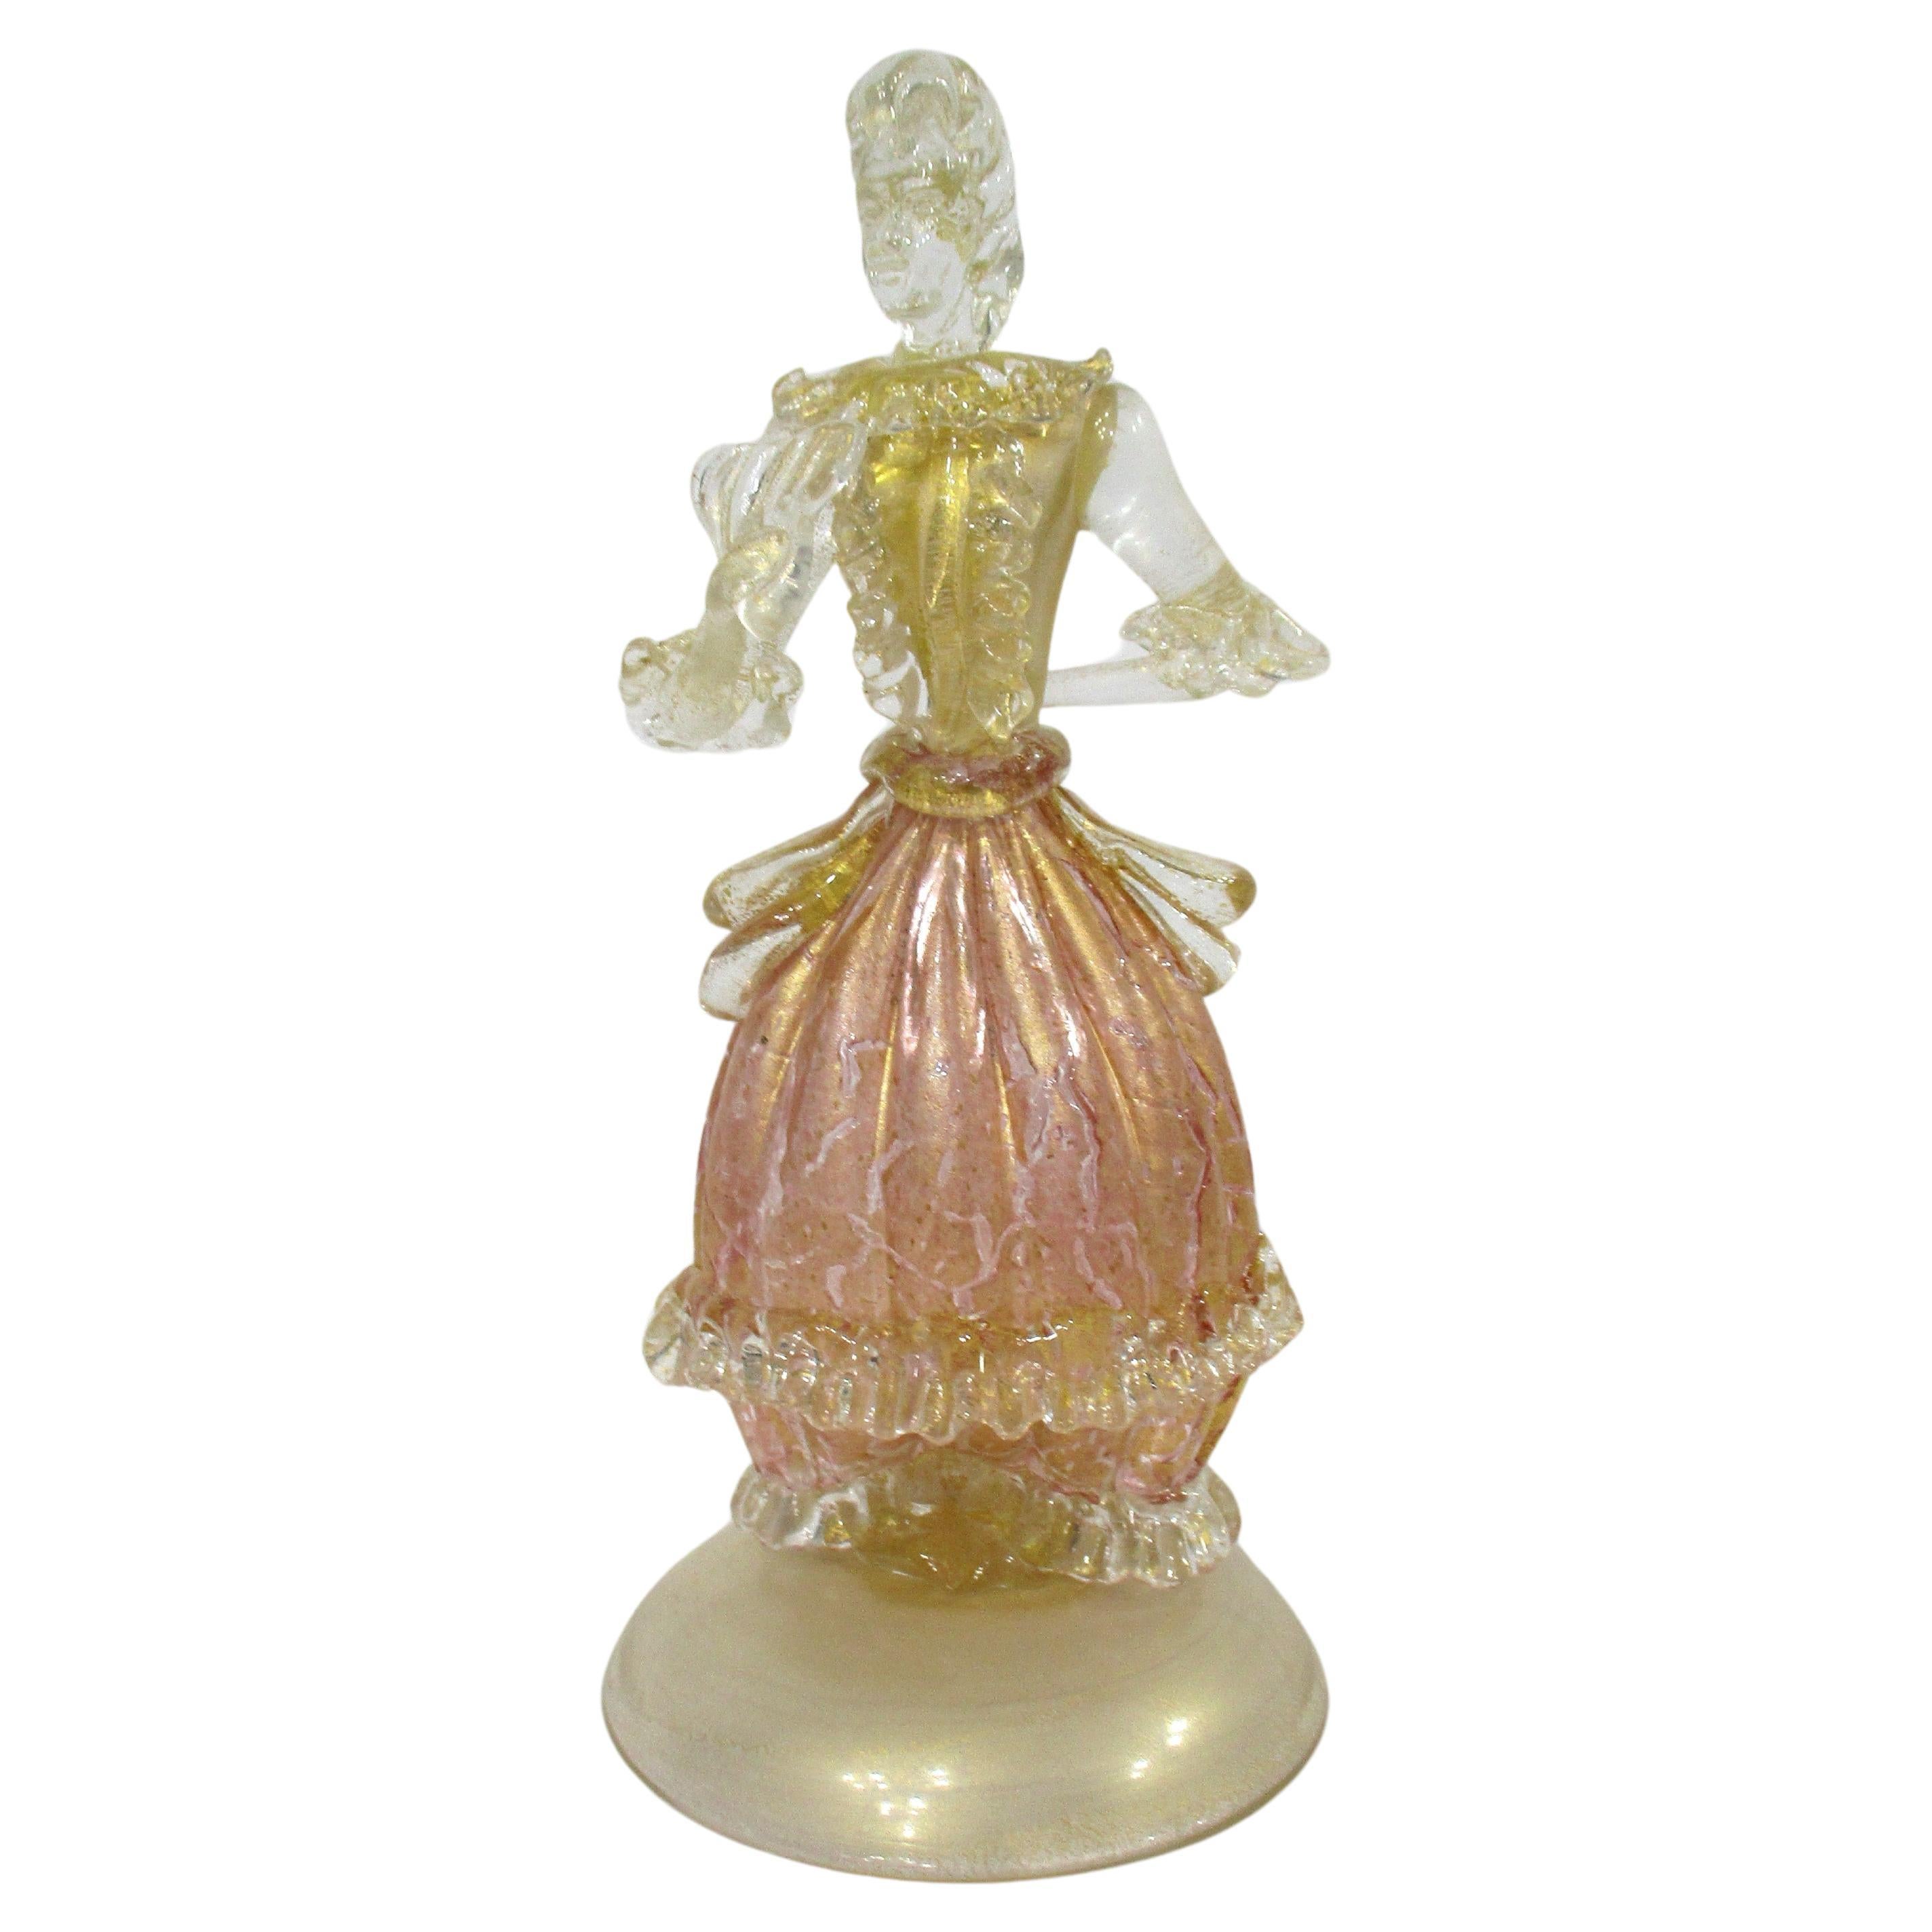 Murano Female Figurine in the style of Seguso Vetri dArte